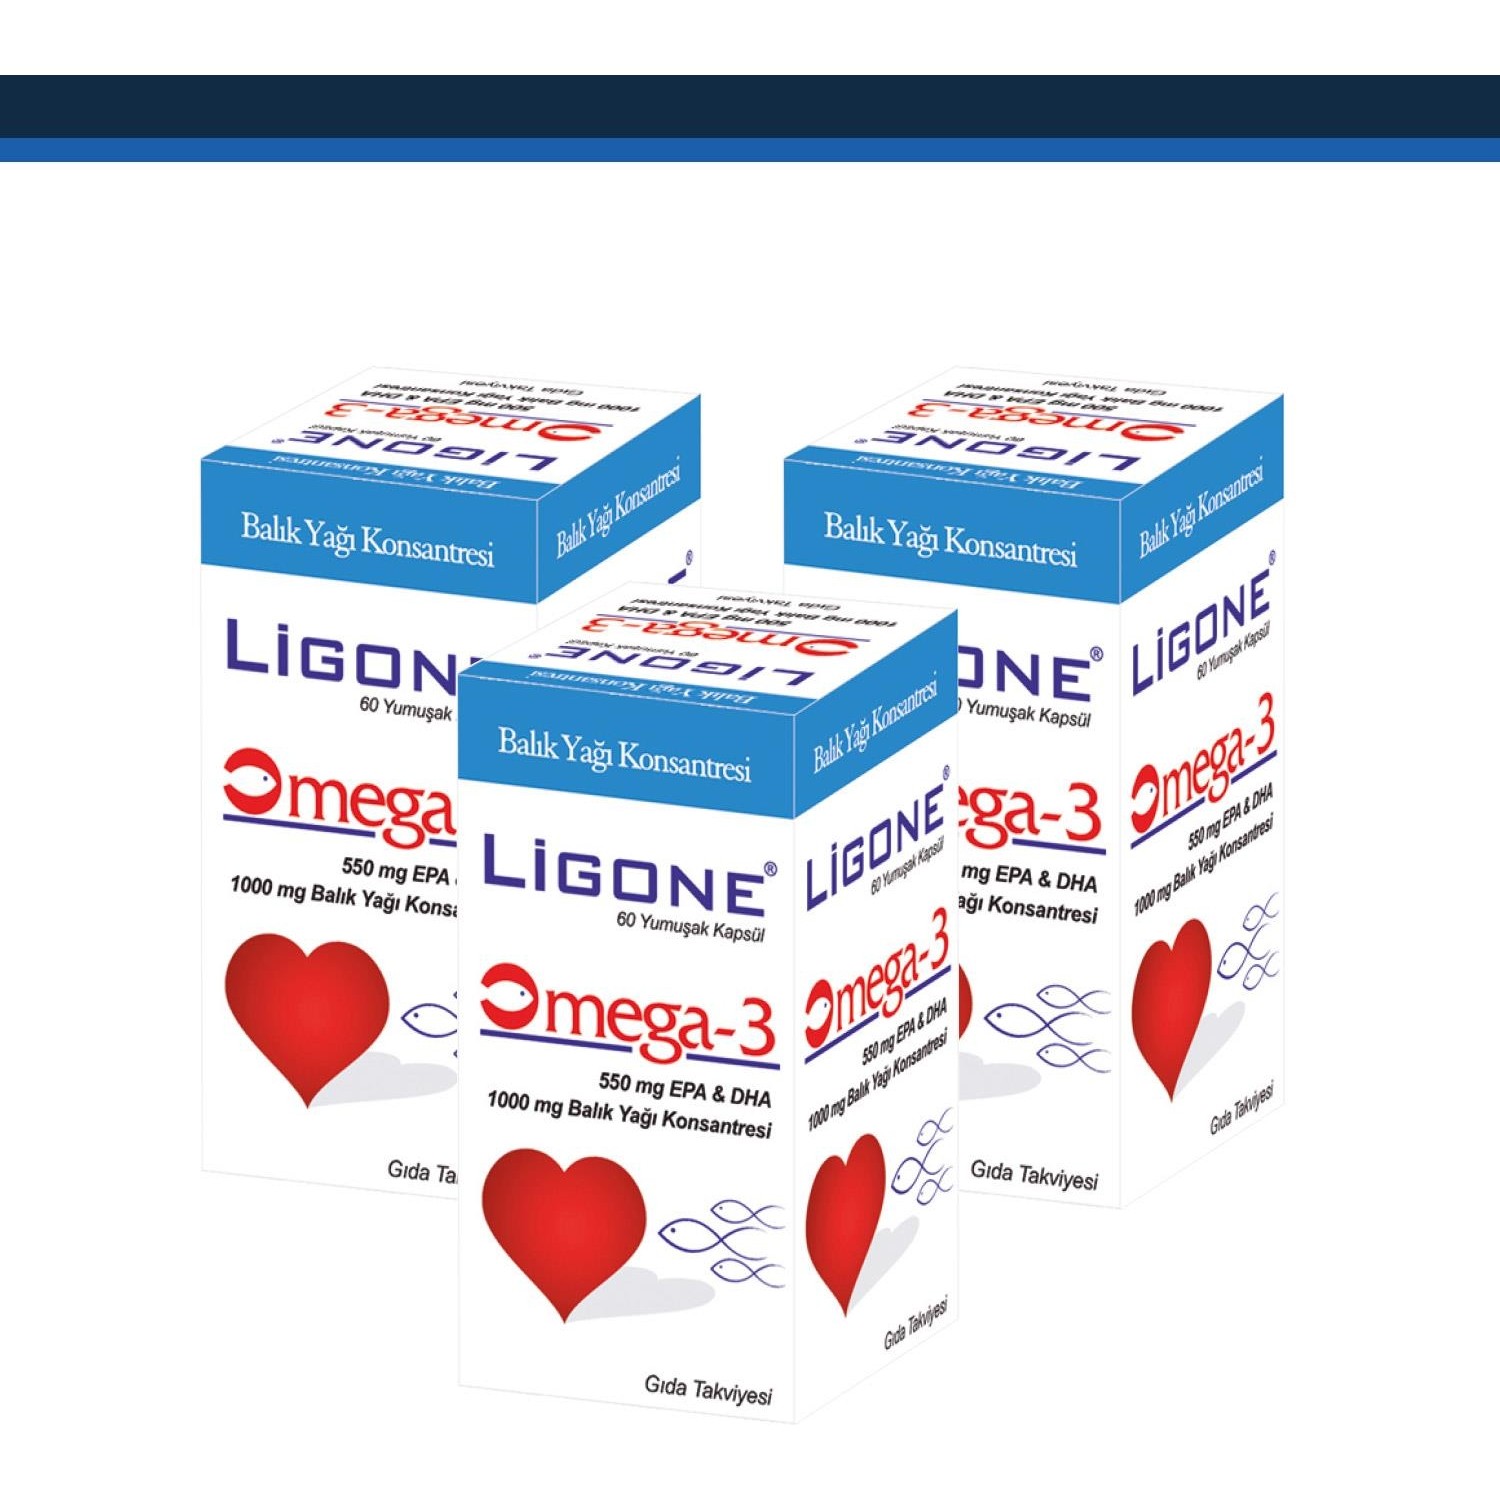 Мягкие капсулы Newdrog Ligone Omega-3, 3 шт